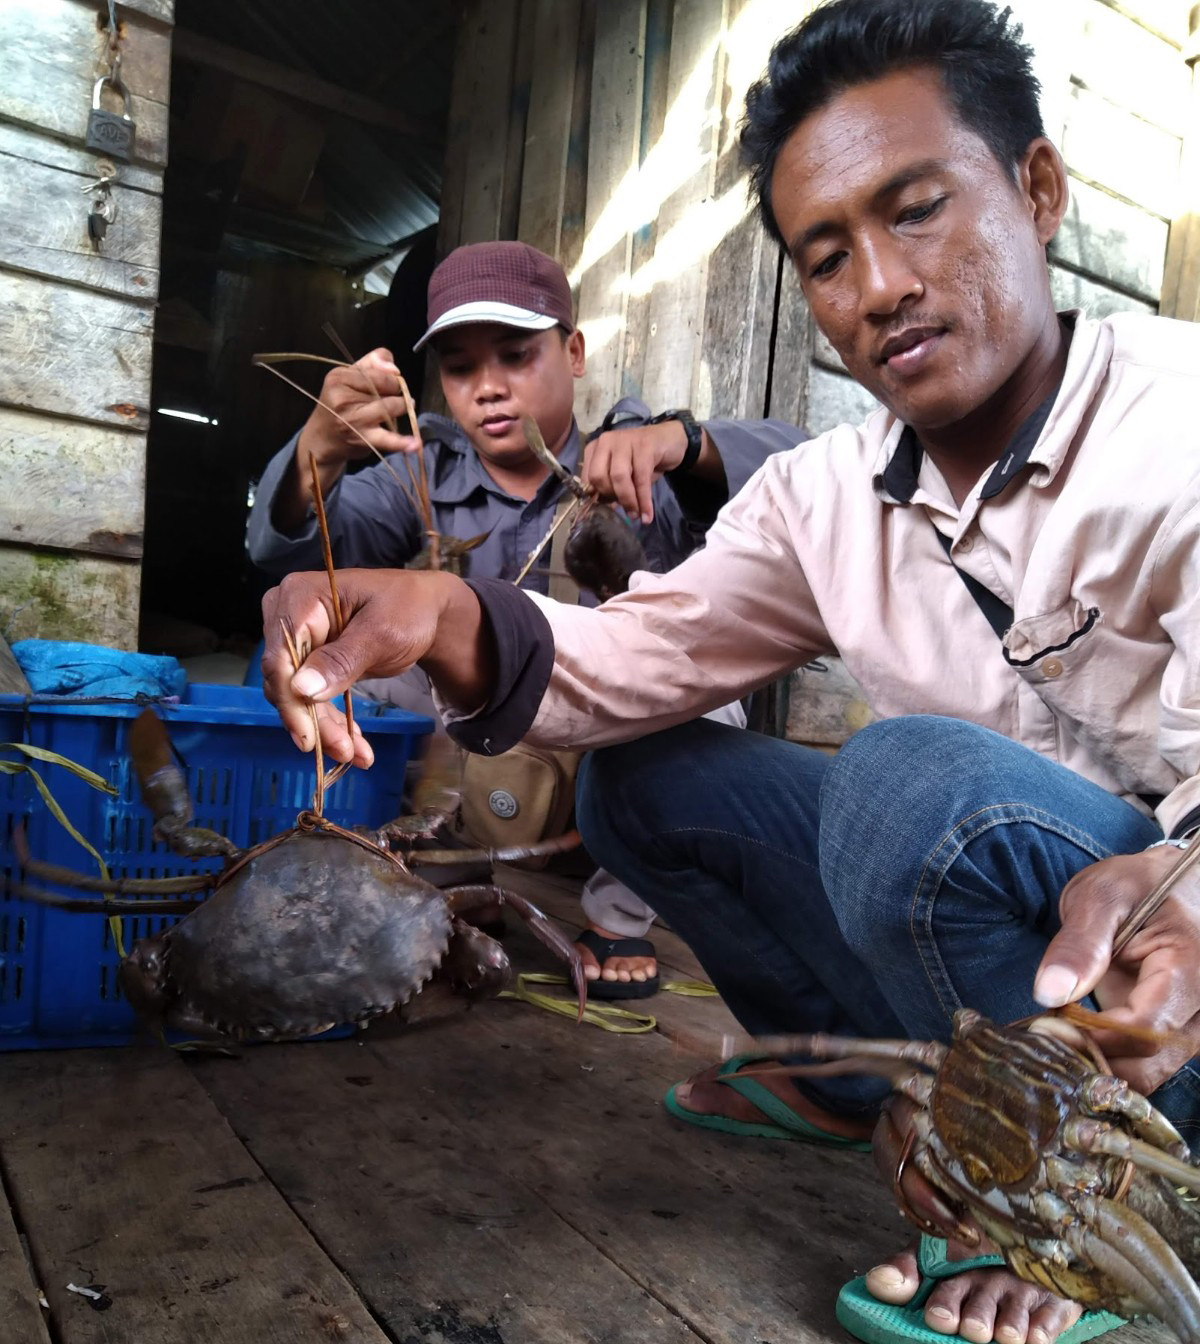 Hasil tangkapan kepiting nelayan lebih besar, setelah ada sistem buka tutup sungai | Foto: Aseanty Pahlevi/ Mongabay Indonesia